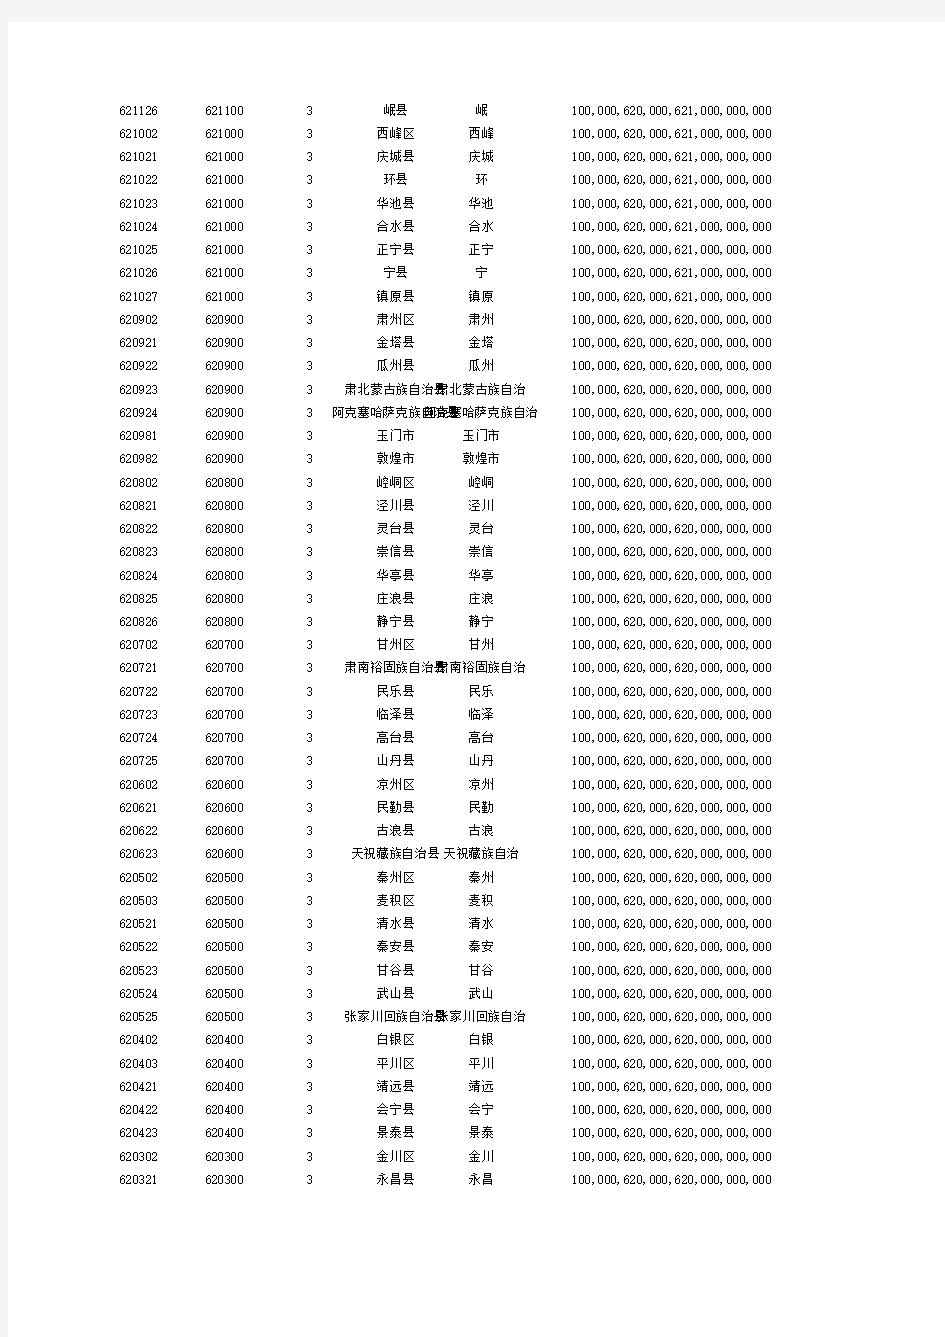 甘肃省-行政区划数据库表